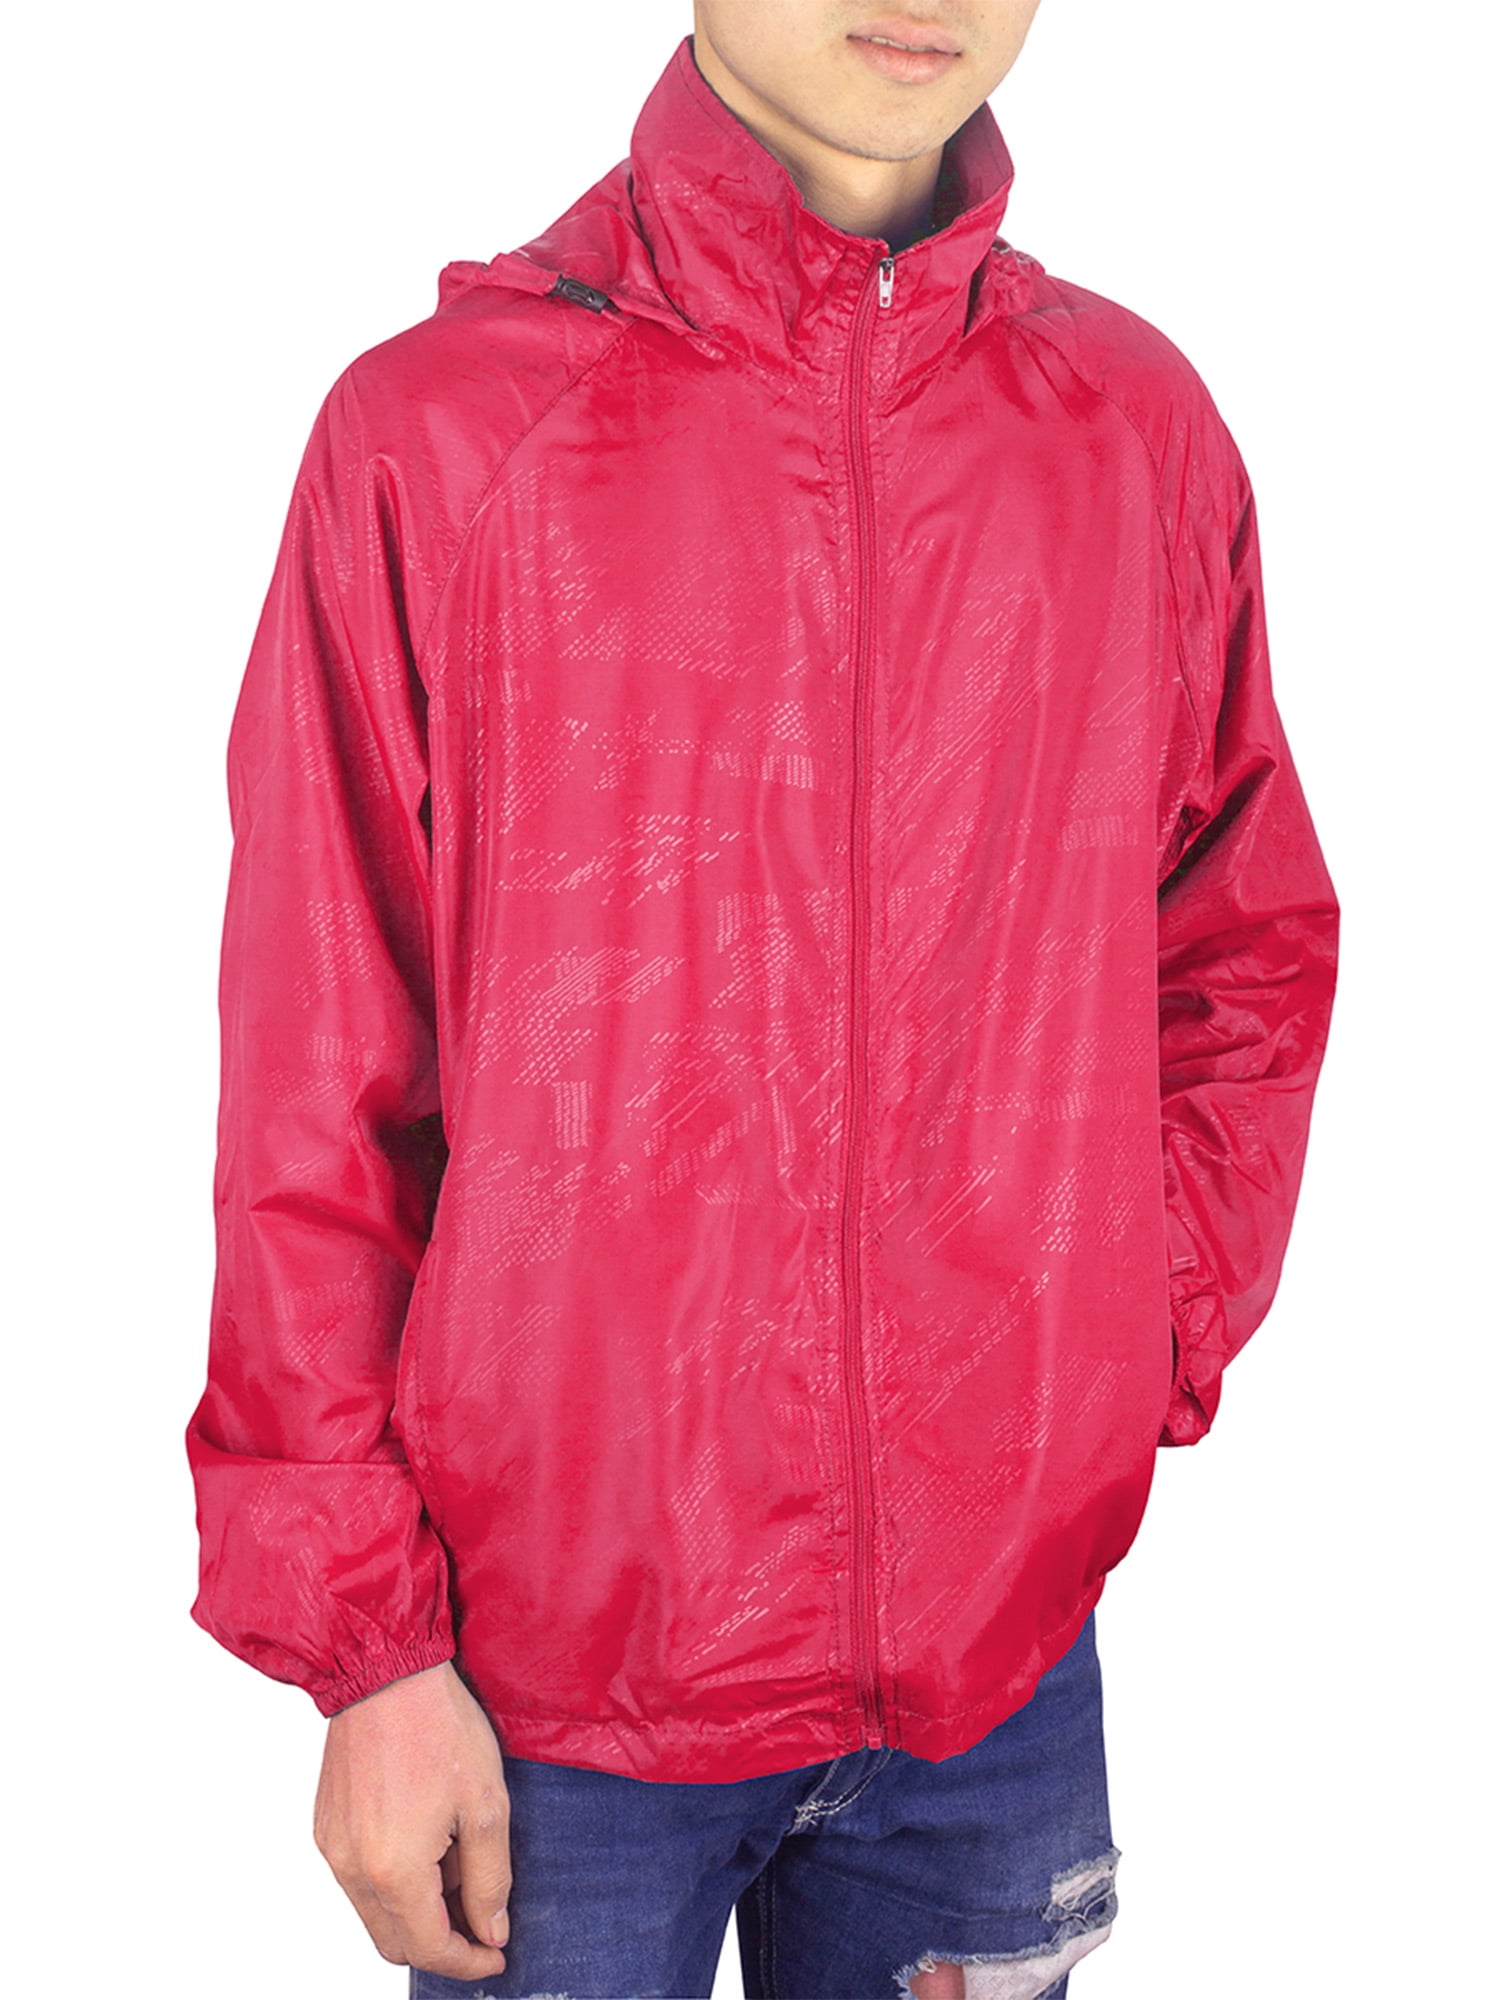 Men's Packable Hooded Jackets Outdoor Waterproof Lightweight Jacket ...